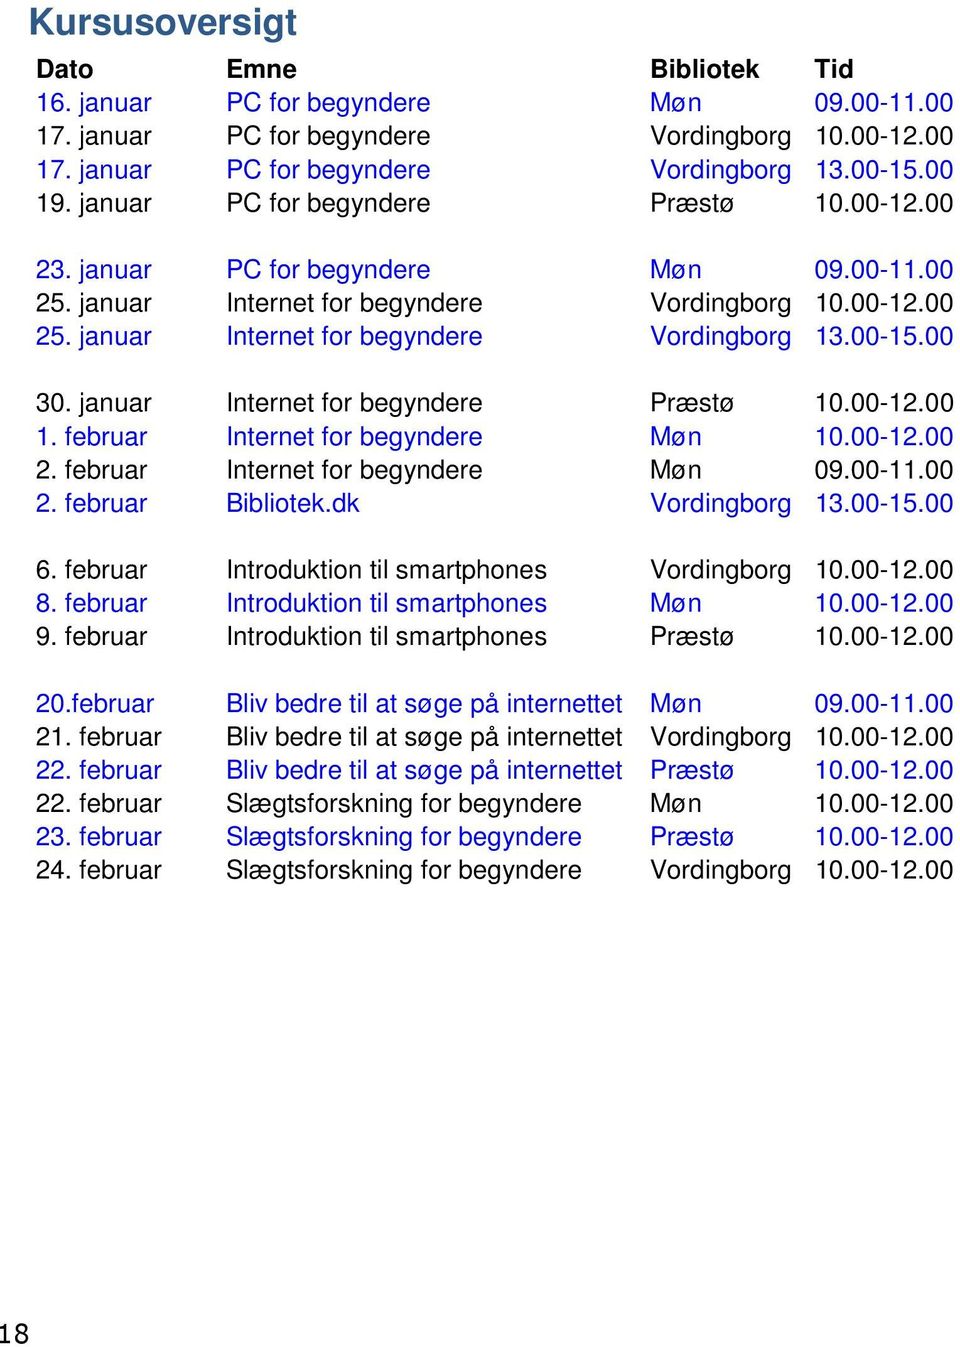 00 30. januar Internet for begyndere Præstø 10.00-12.00 1. februar Internet for begyndere Møn 10.00-12.00 2. februar Internet for begyndere Møn 09.00-11.00 2. februar Bibliotek.dk Vordingborg 13.